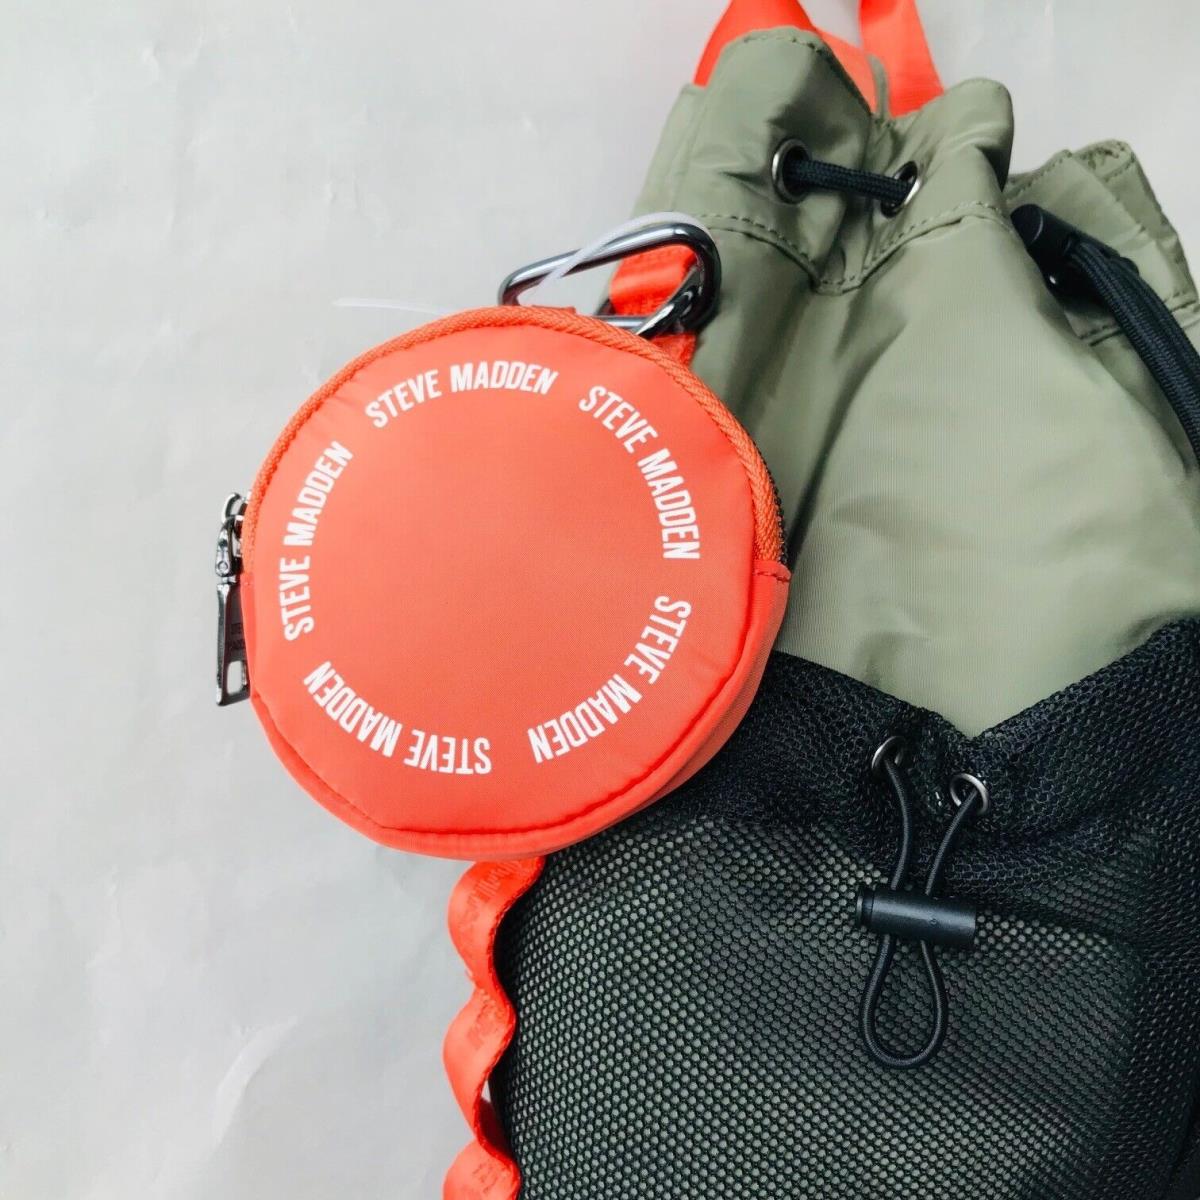 Steve Madden Olive Green / Orange Multi Bcassy Nylon Backpack Sling Bag